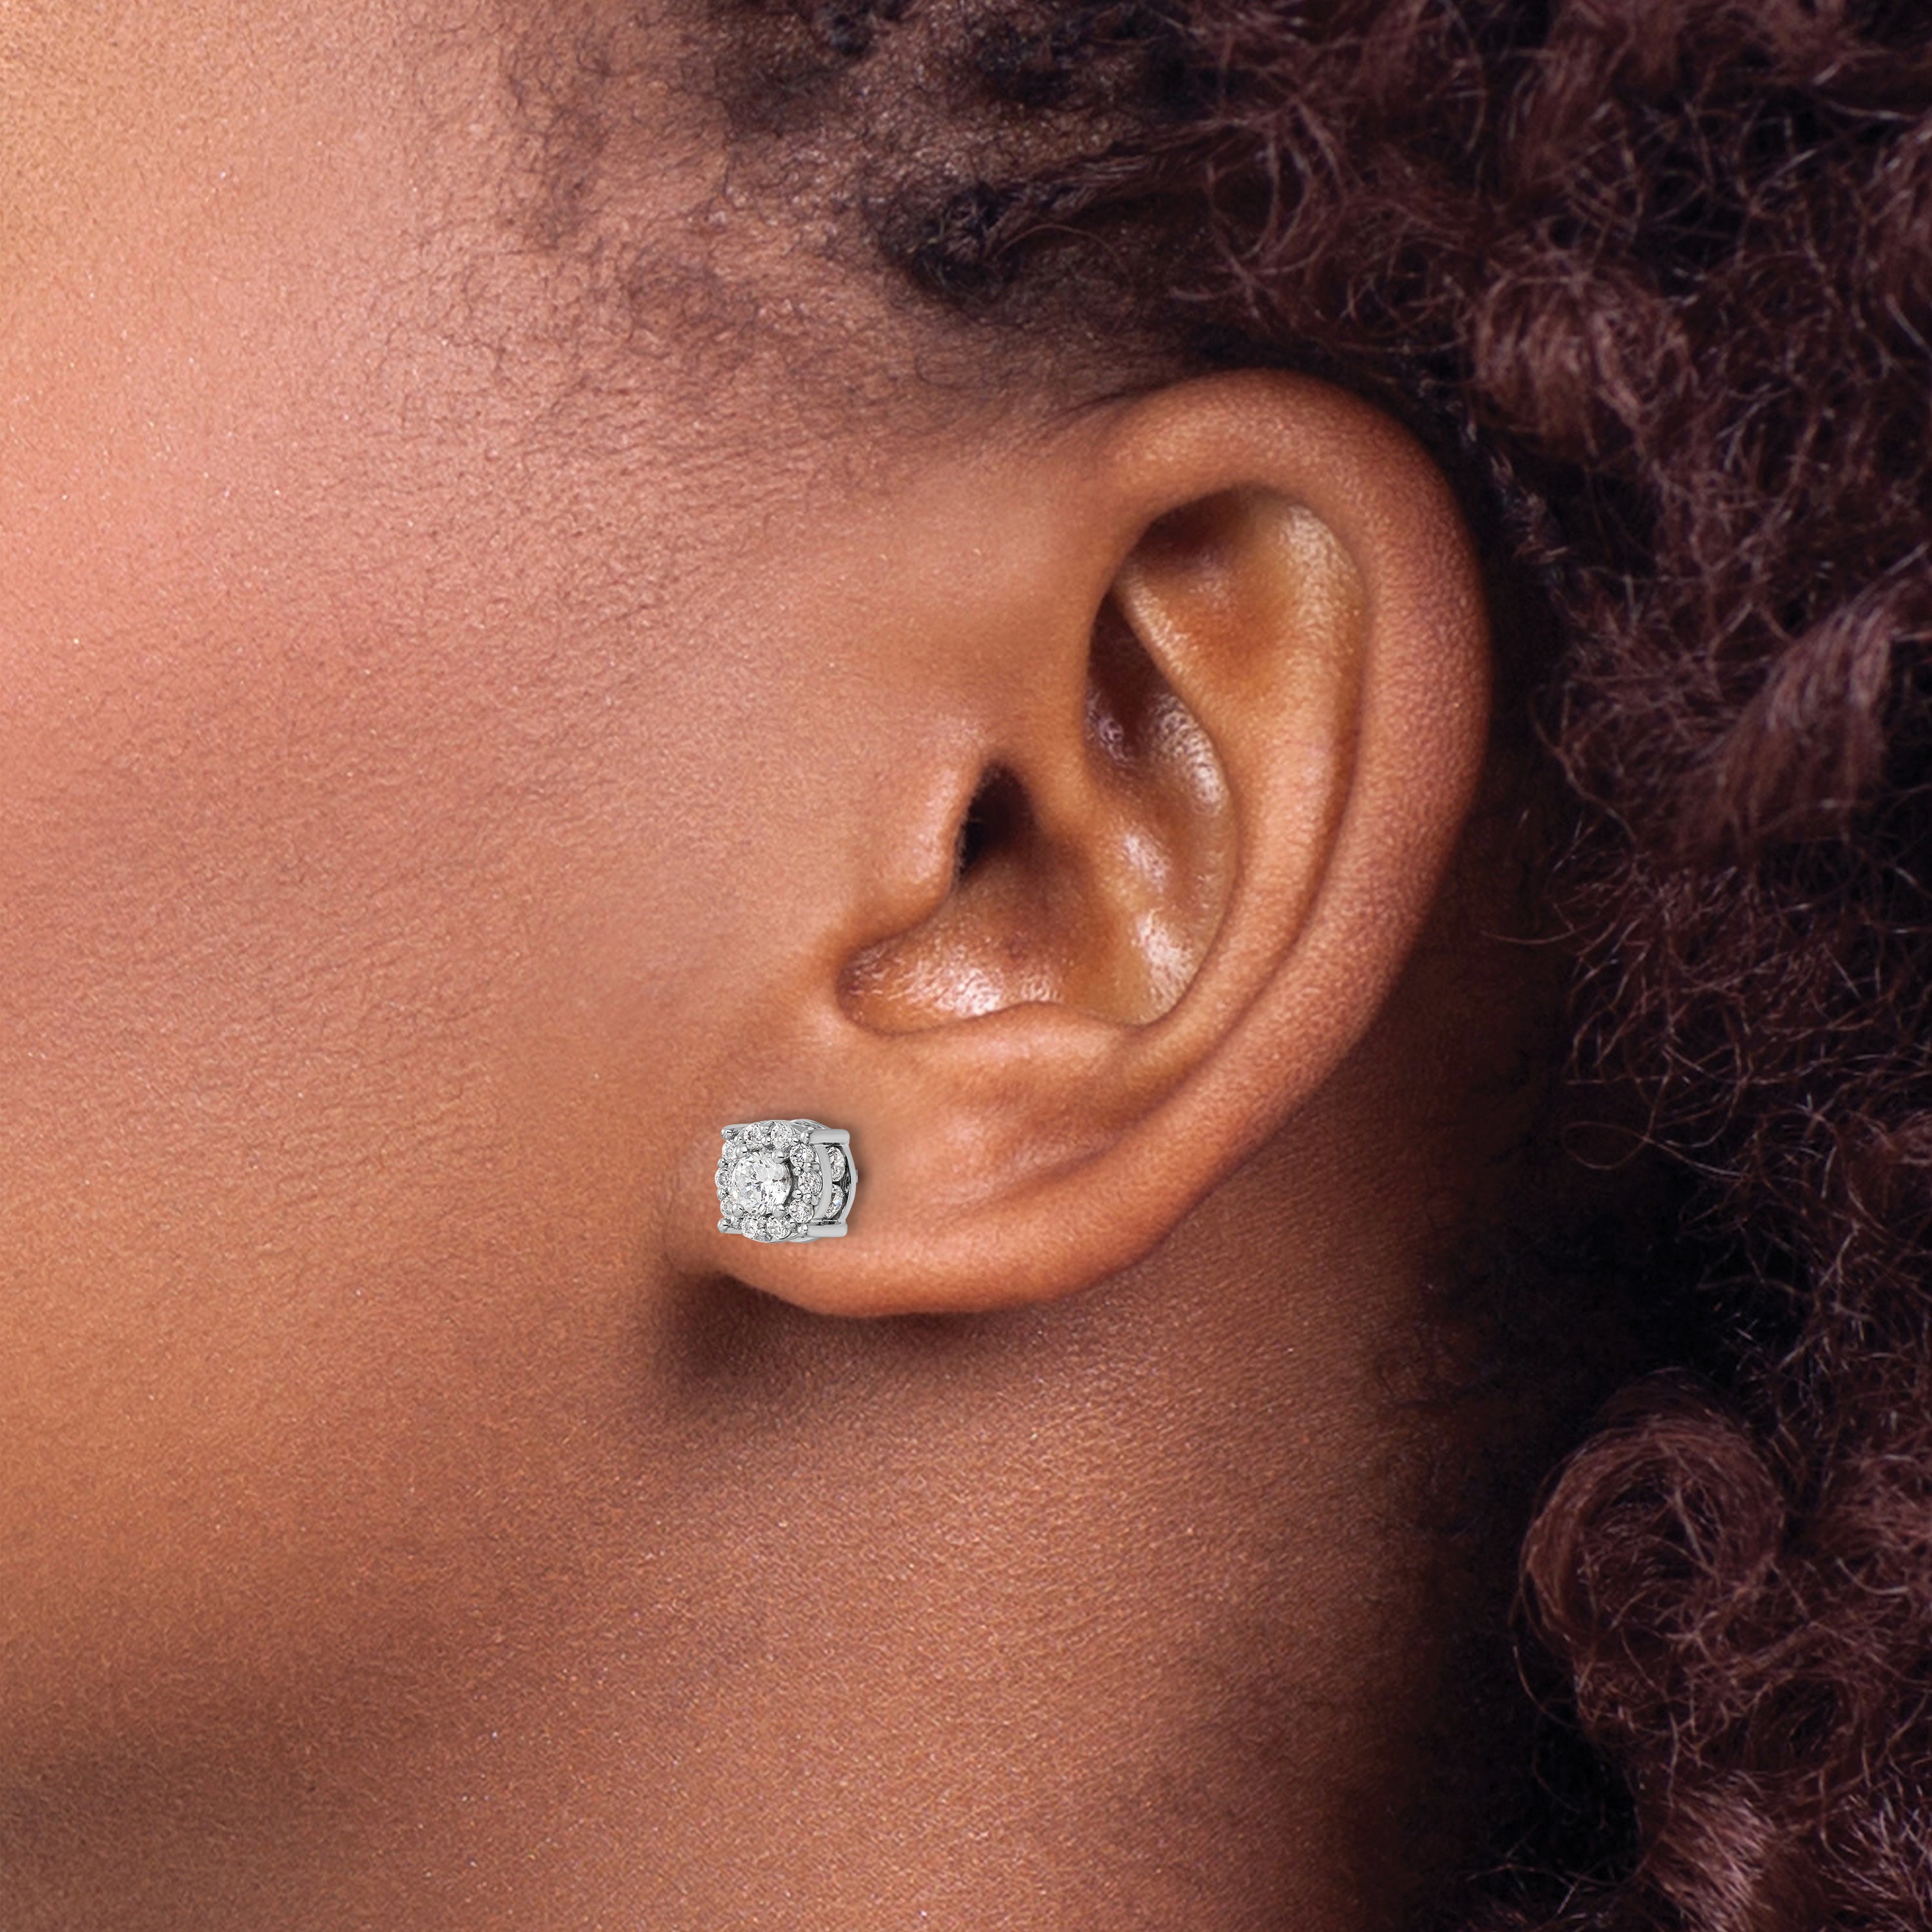 10K White Gold Lab Grown Diamond Fashion Earrings